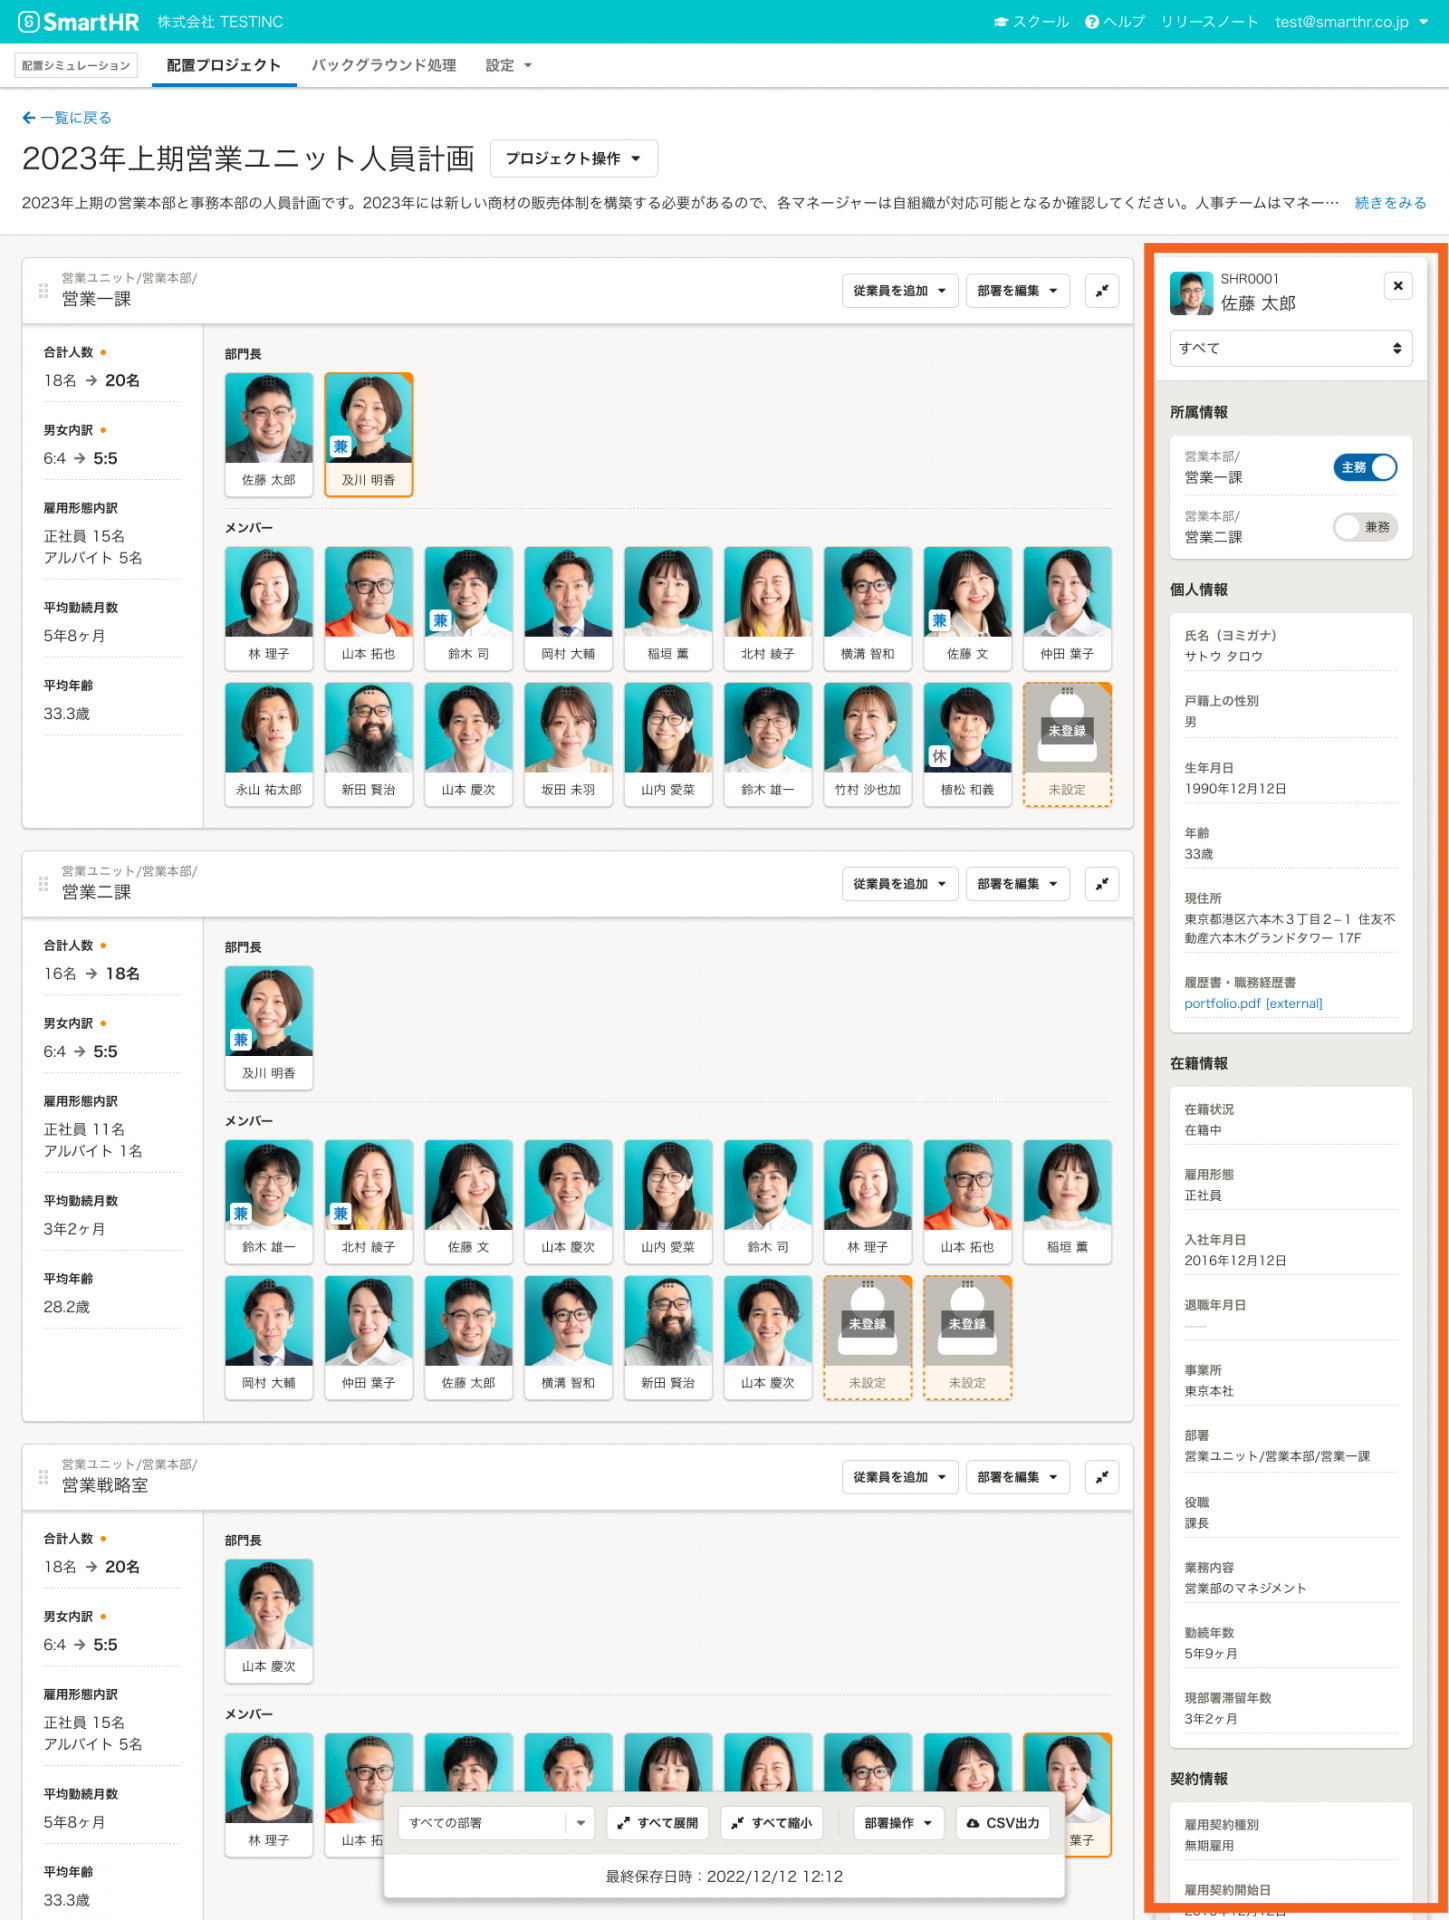 部署ごとに従業員の顔写真がタイルのように並んでいる。選択した従業員の詳細情報が右側の枠で一覧表示されている。